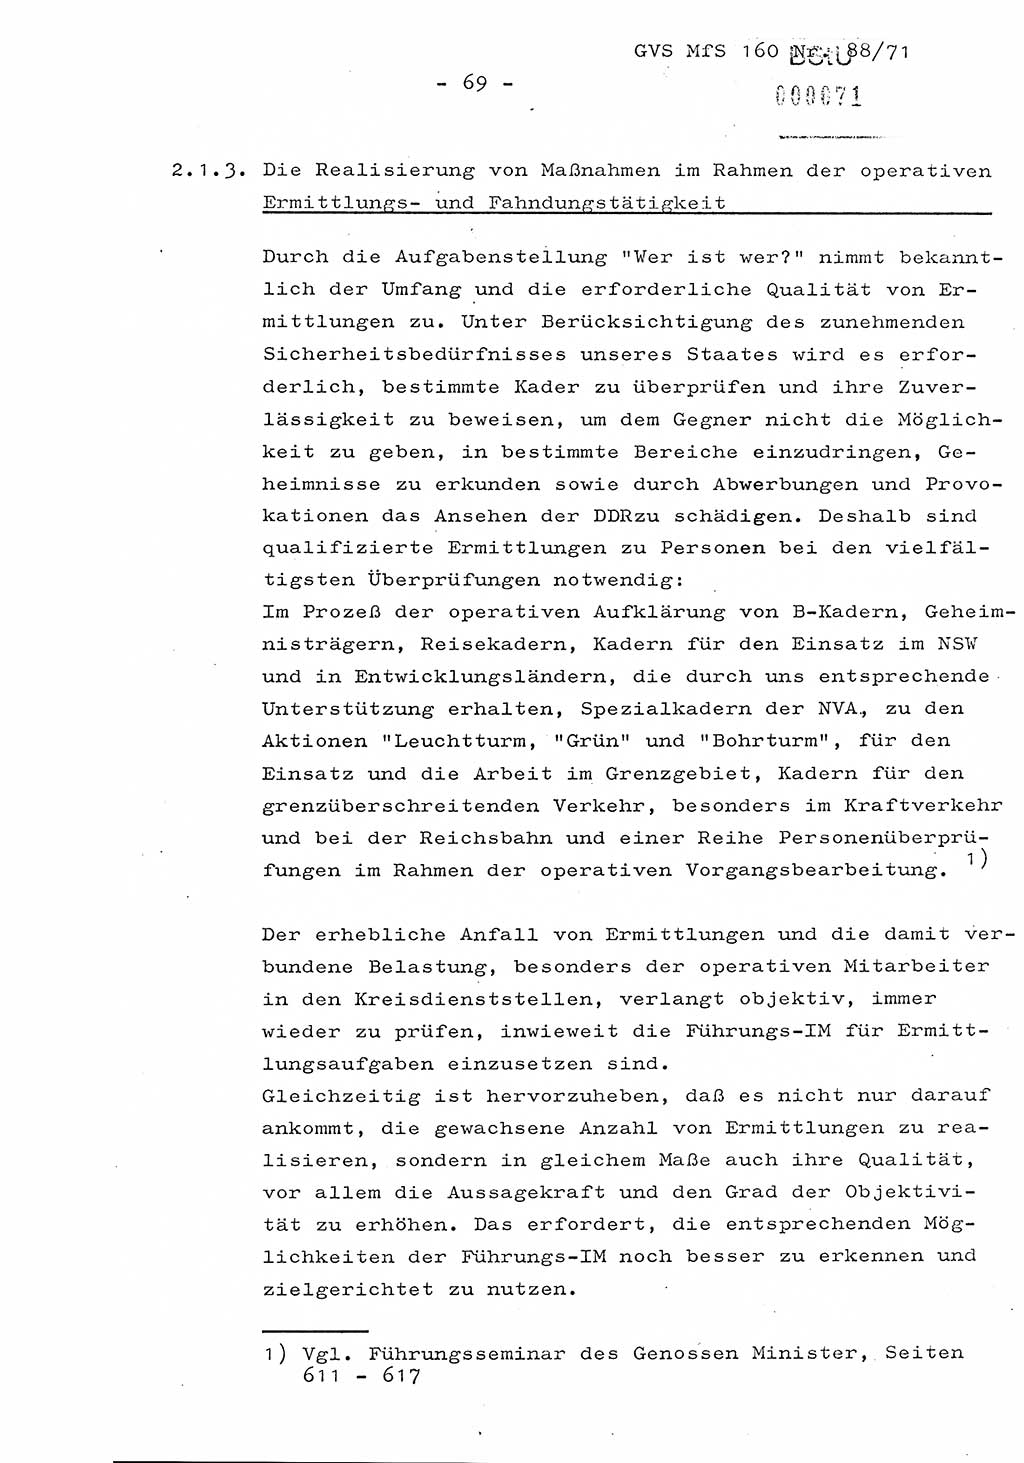 Dissertation Oberstleutnant Josef Schwarz (BV Schwerin), Major Fritz Amm (JHS), Hauptmann Peter Gräßler (JHS), Ministerium für Staatssicherheit (MfS) [Deutsche Demokratische Republik (DDR)], Juristische Hochschule (JHS), Geheime Verschlußsache (GVS) 160-88/71, Potsdam 1972, Seite 69 (Diss. MfS DDR JHS GVS 160-88/71 1972, S. 69)